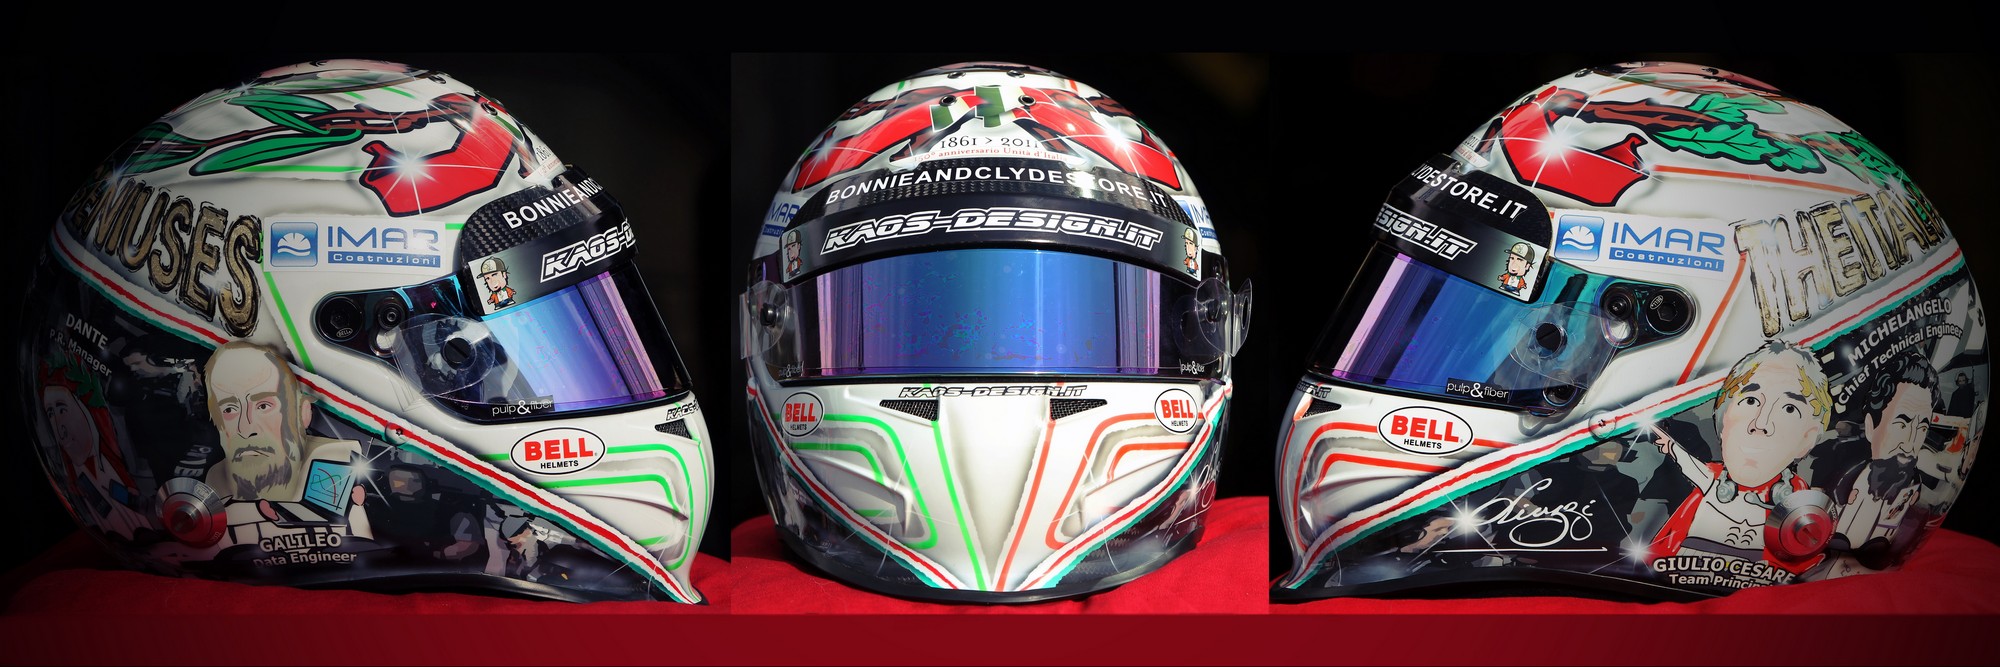 Шлем Витантонио Лиуцци на Гран-При Италии 2011 года | 2011 Italian Grand Prix helmet of Vitantonio Liuzzi